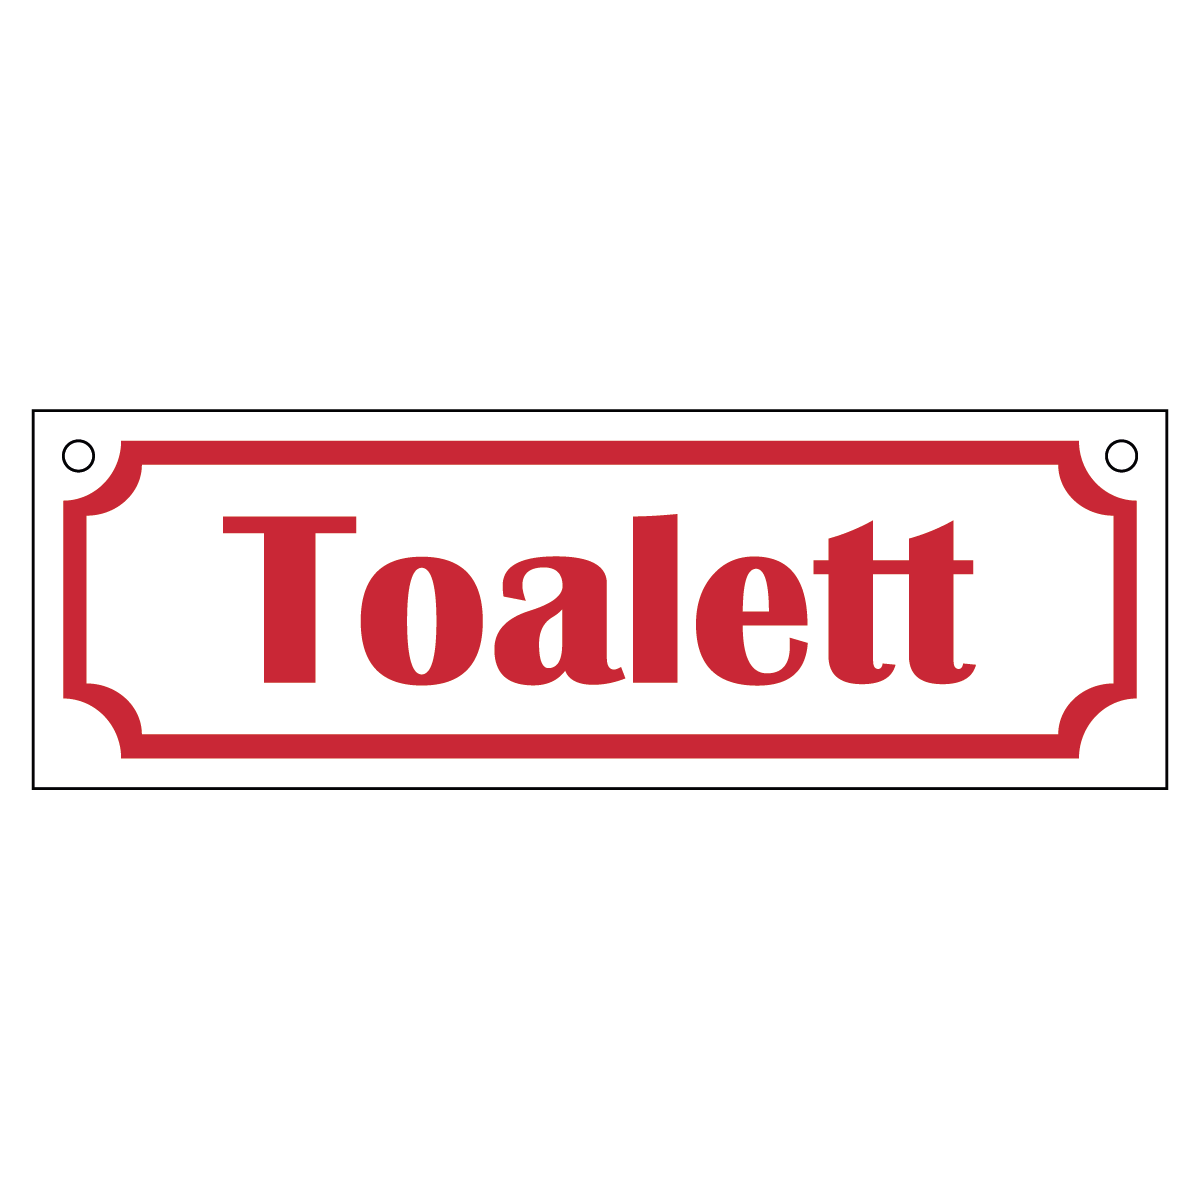 Toalett - Skylt - 150x50mm - Vit - Röd